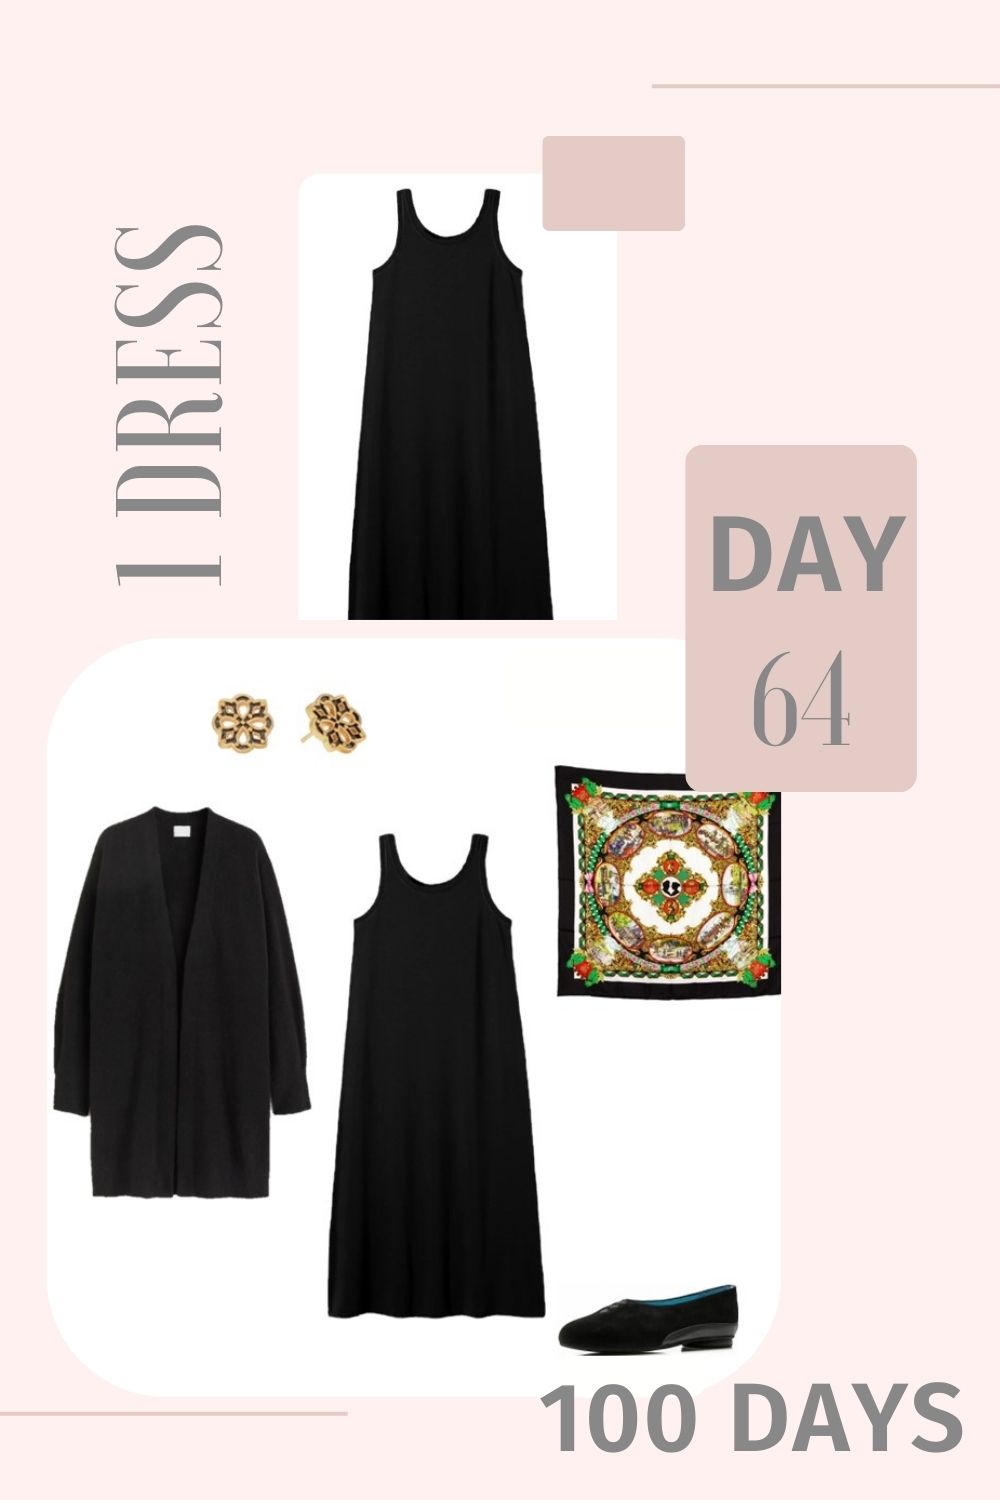 1 Dress 100 Days - Day 64